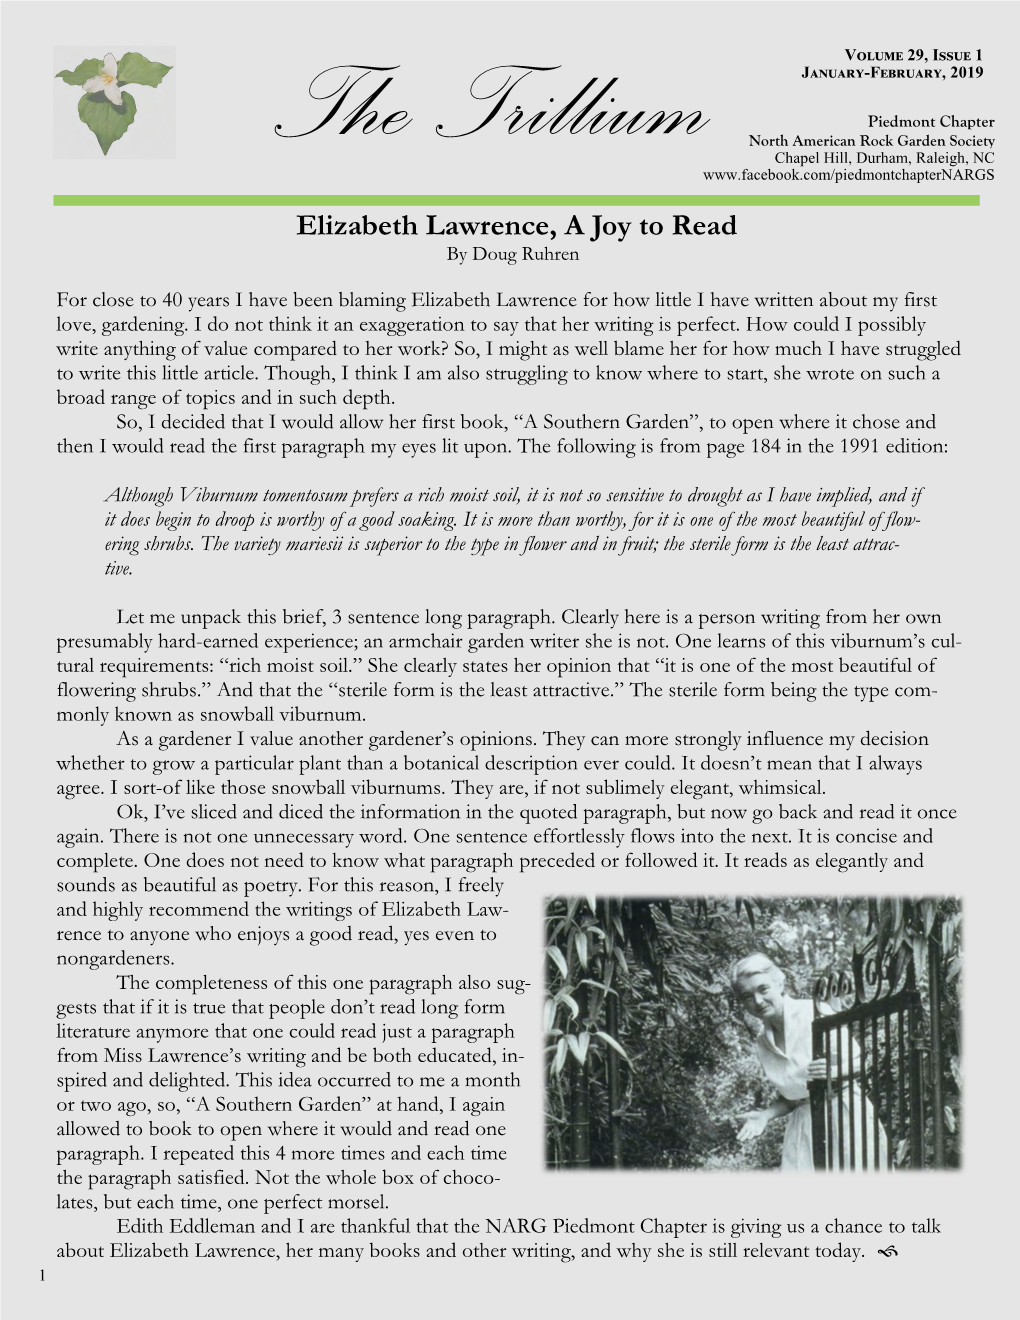 Elizabeth Lawrence, a Joy to Read by Doug Ruhren